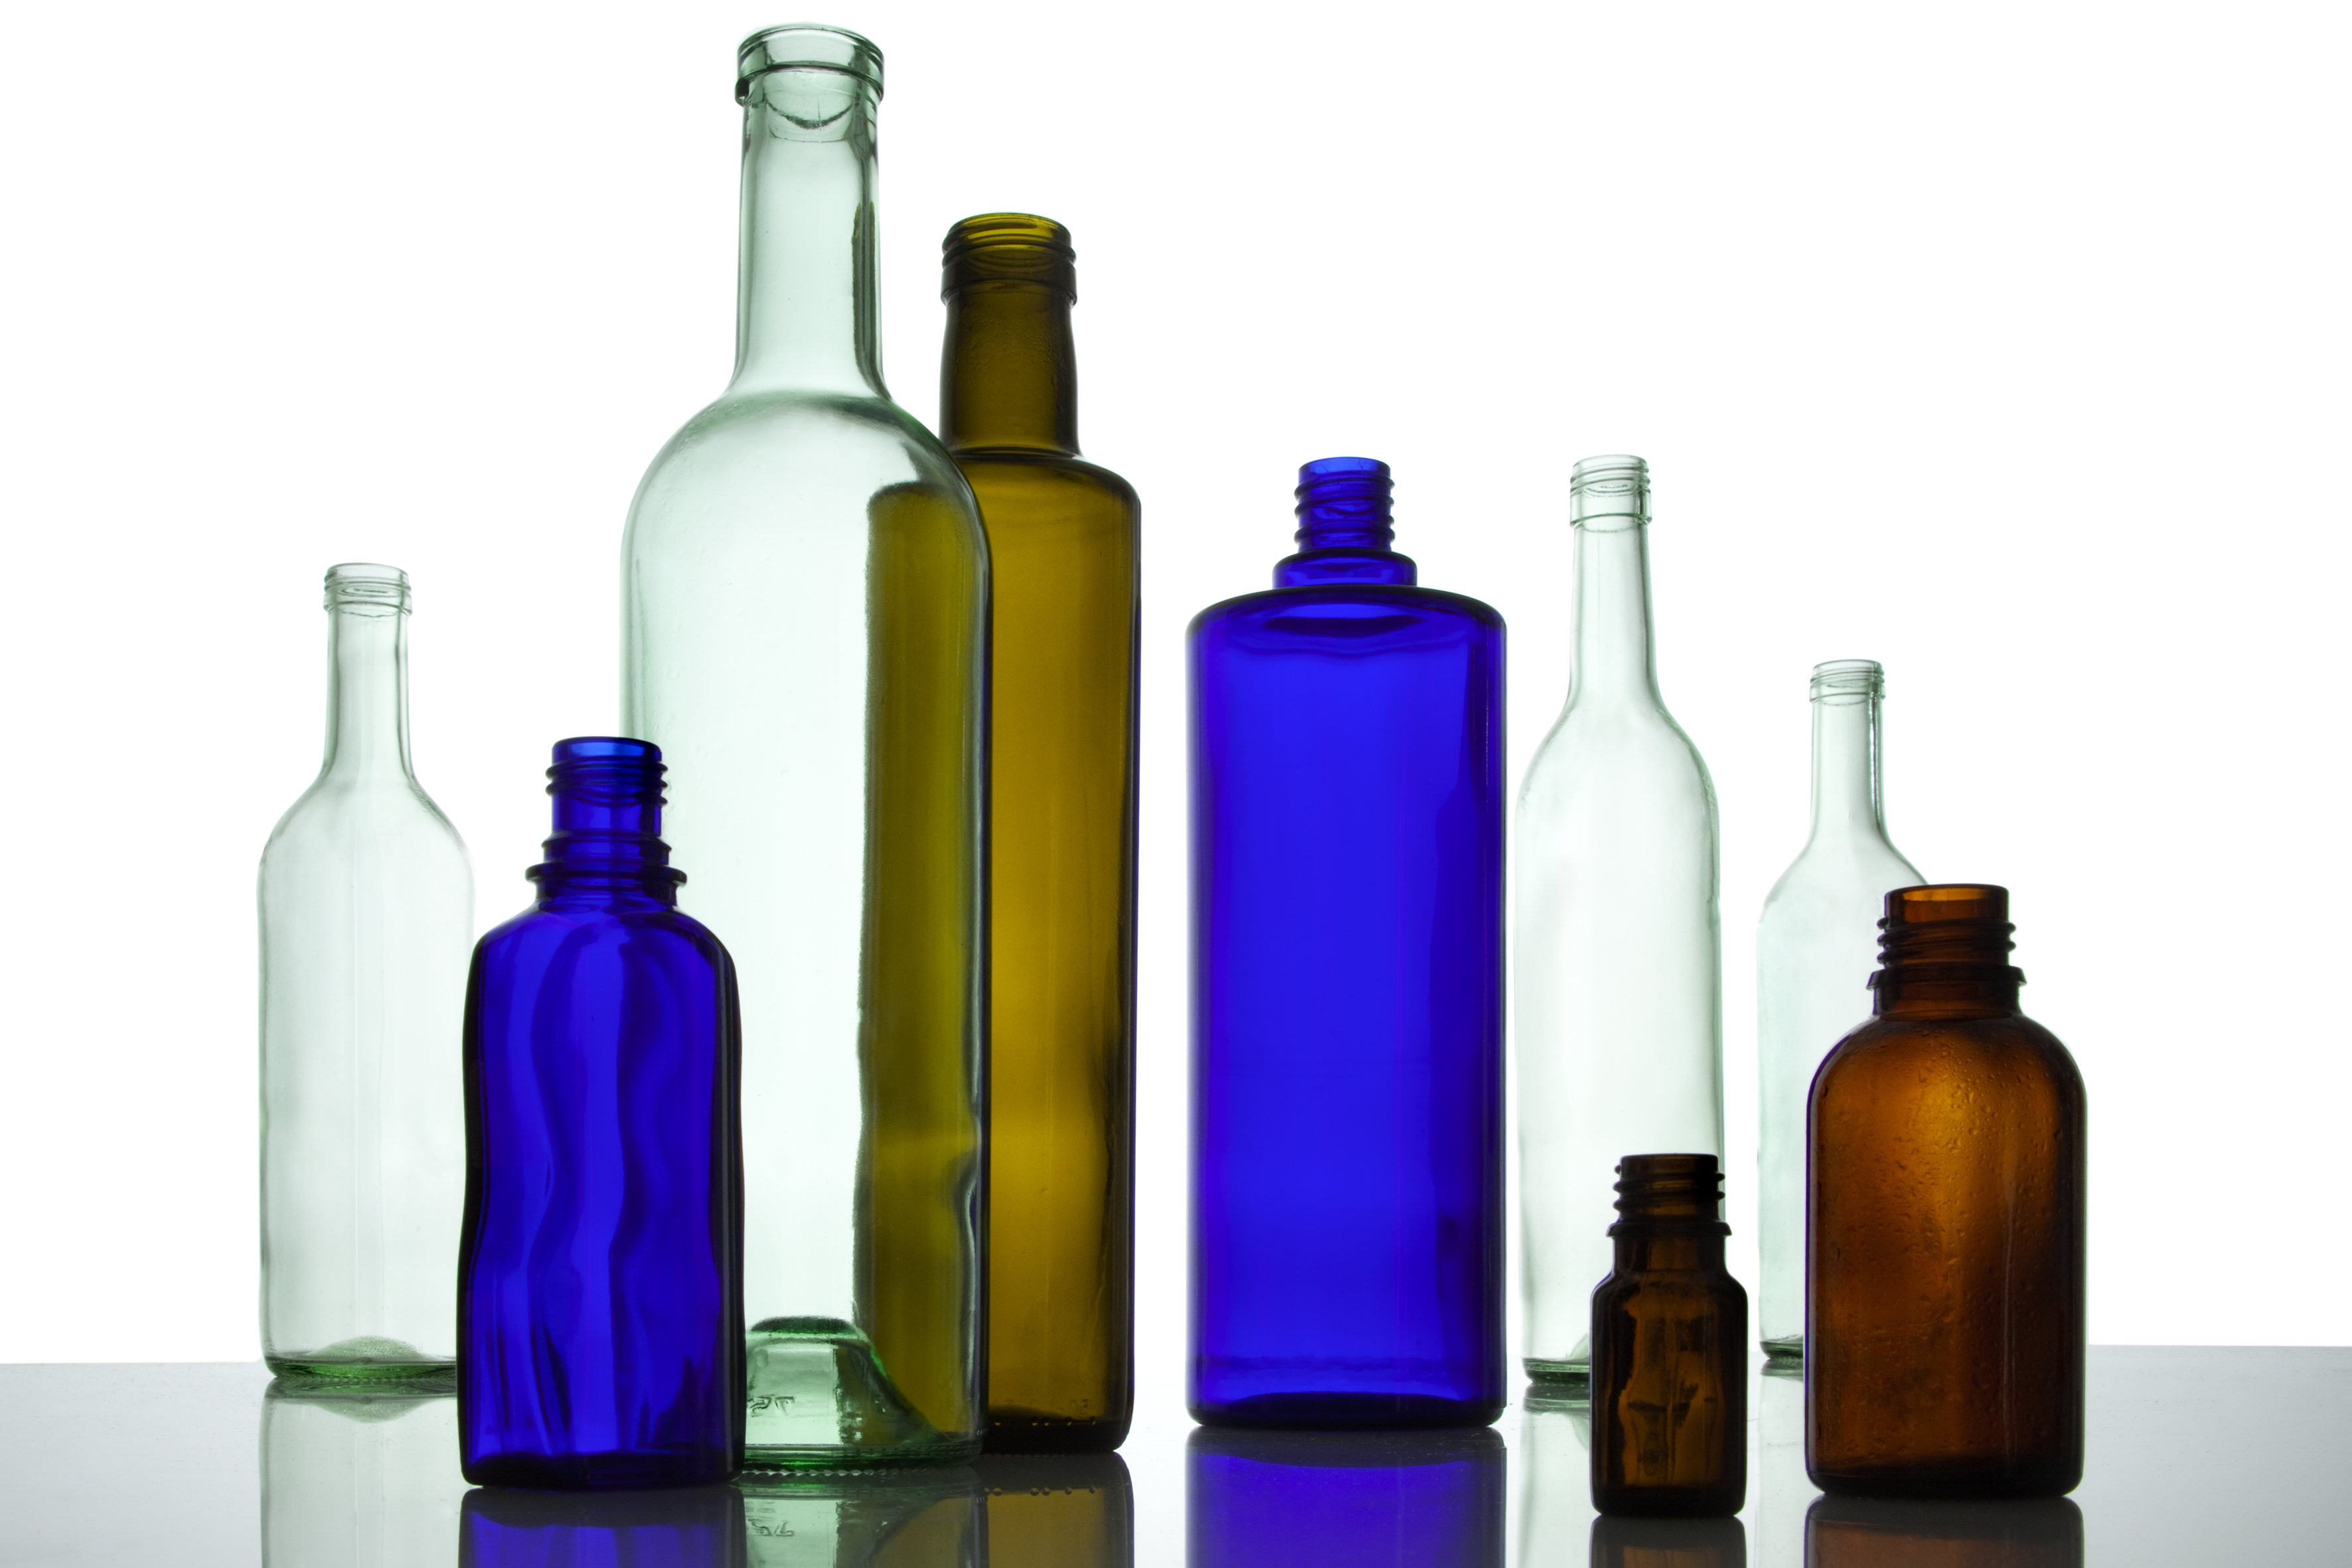 Mehrere leere Glasflaschen in verschiedenen Farben stehen neben- und hintereinander.